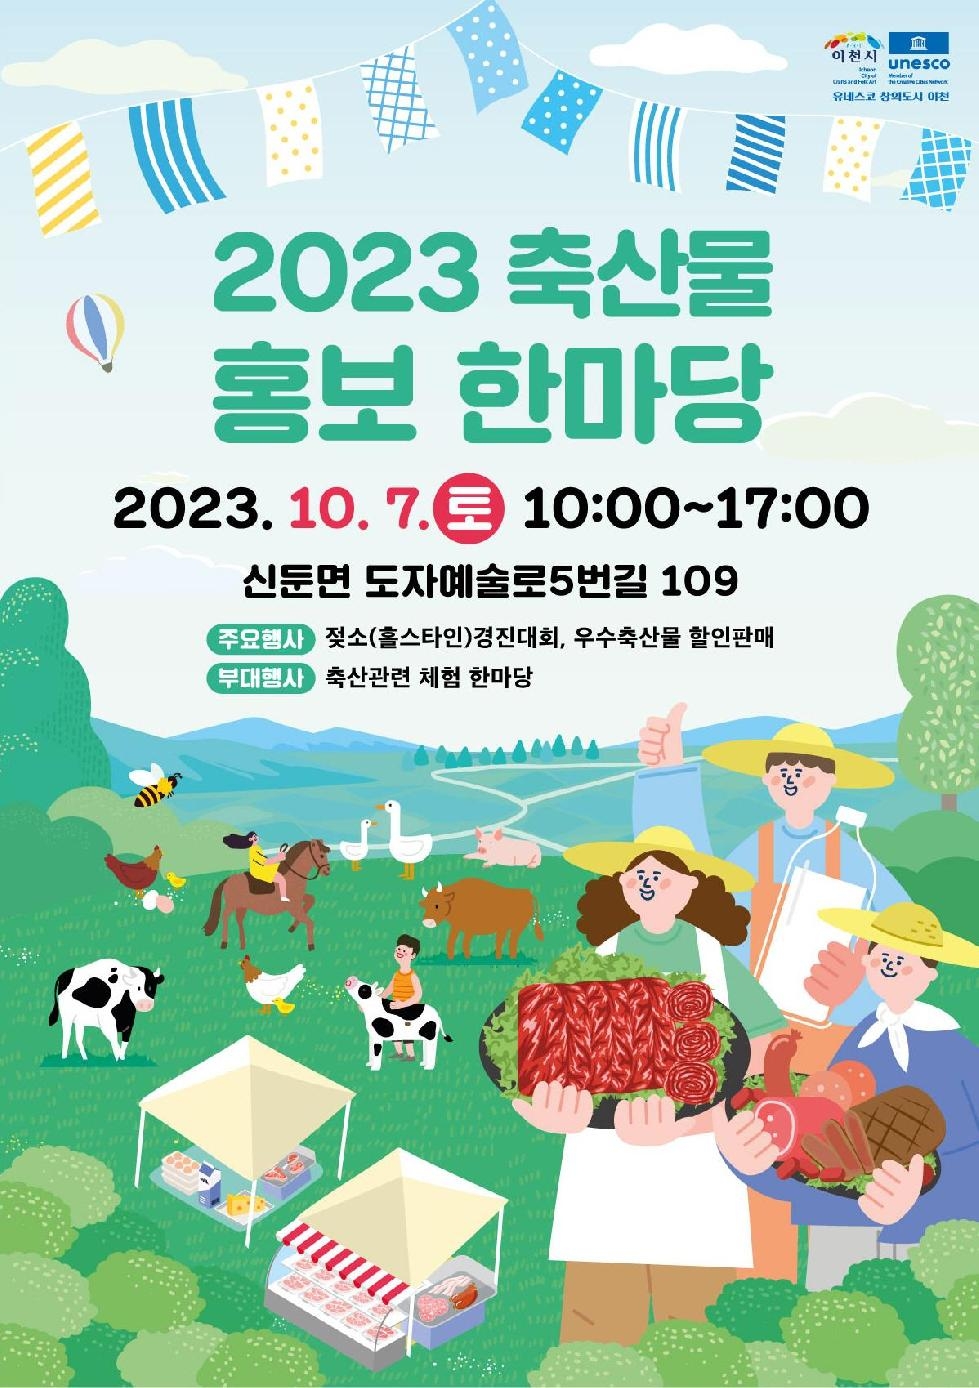 이천시, 10월 7일 이천시 축산물 홍보 한마당 개최